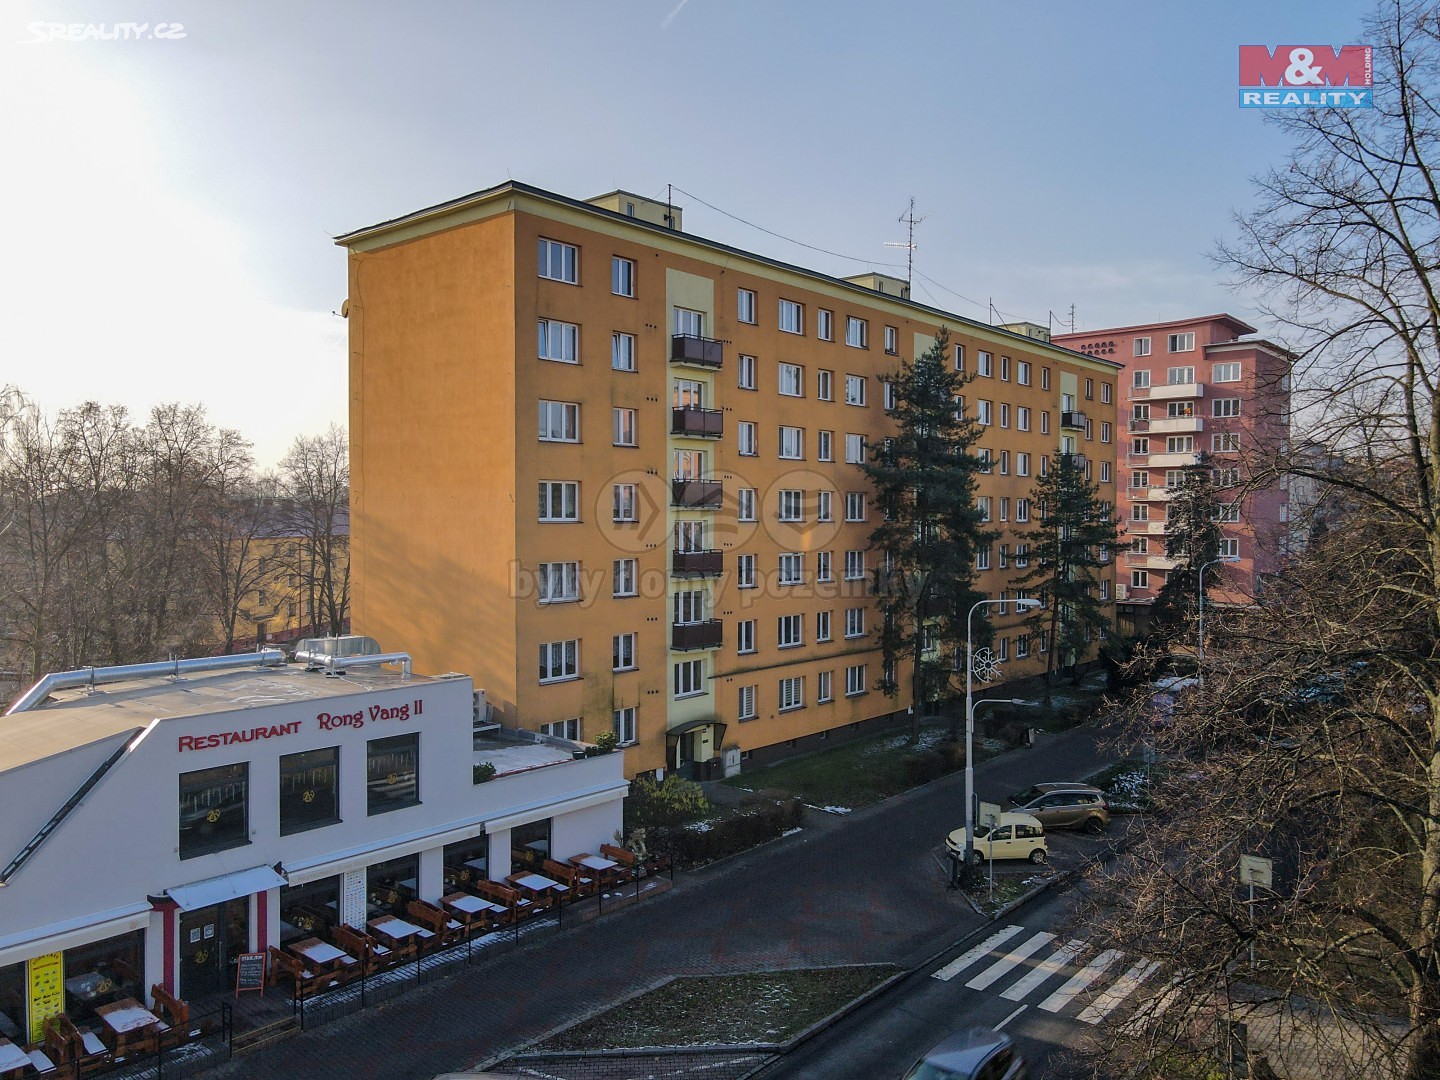 Prodej bytu 2+kk 58 m², Hlavní třída, Ostrava - Poruba